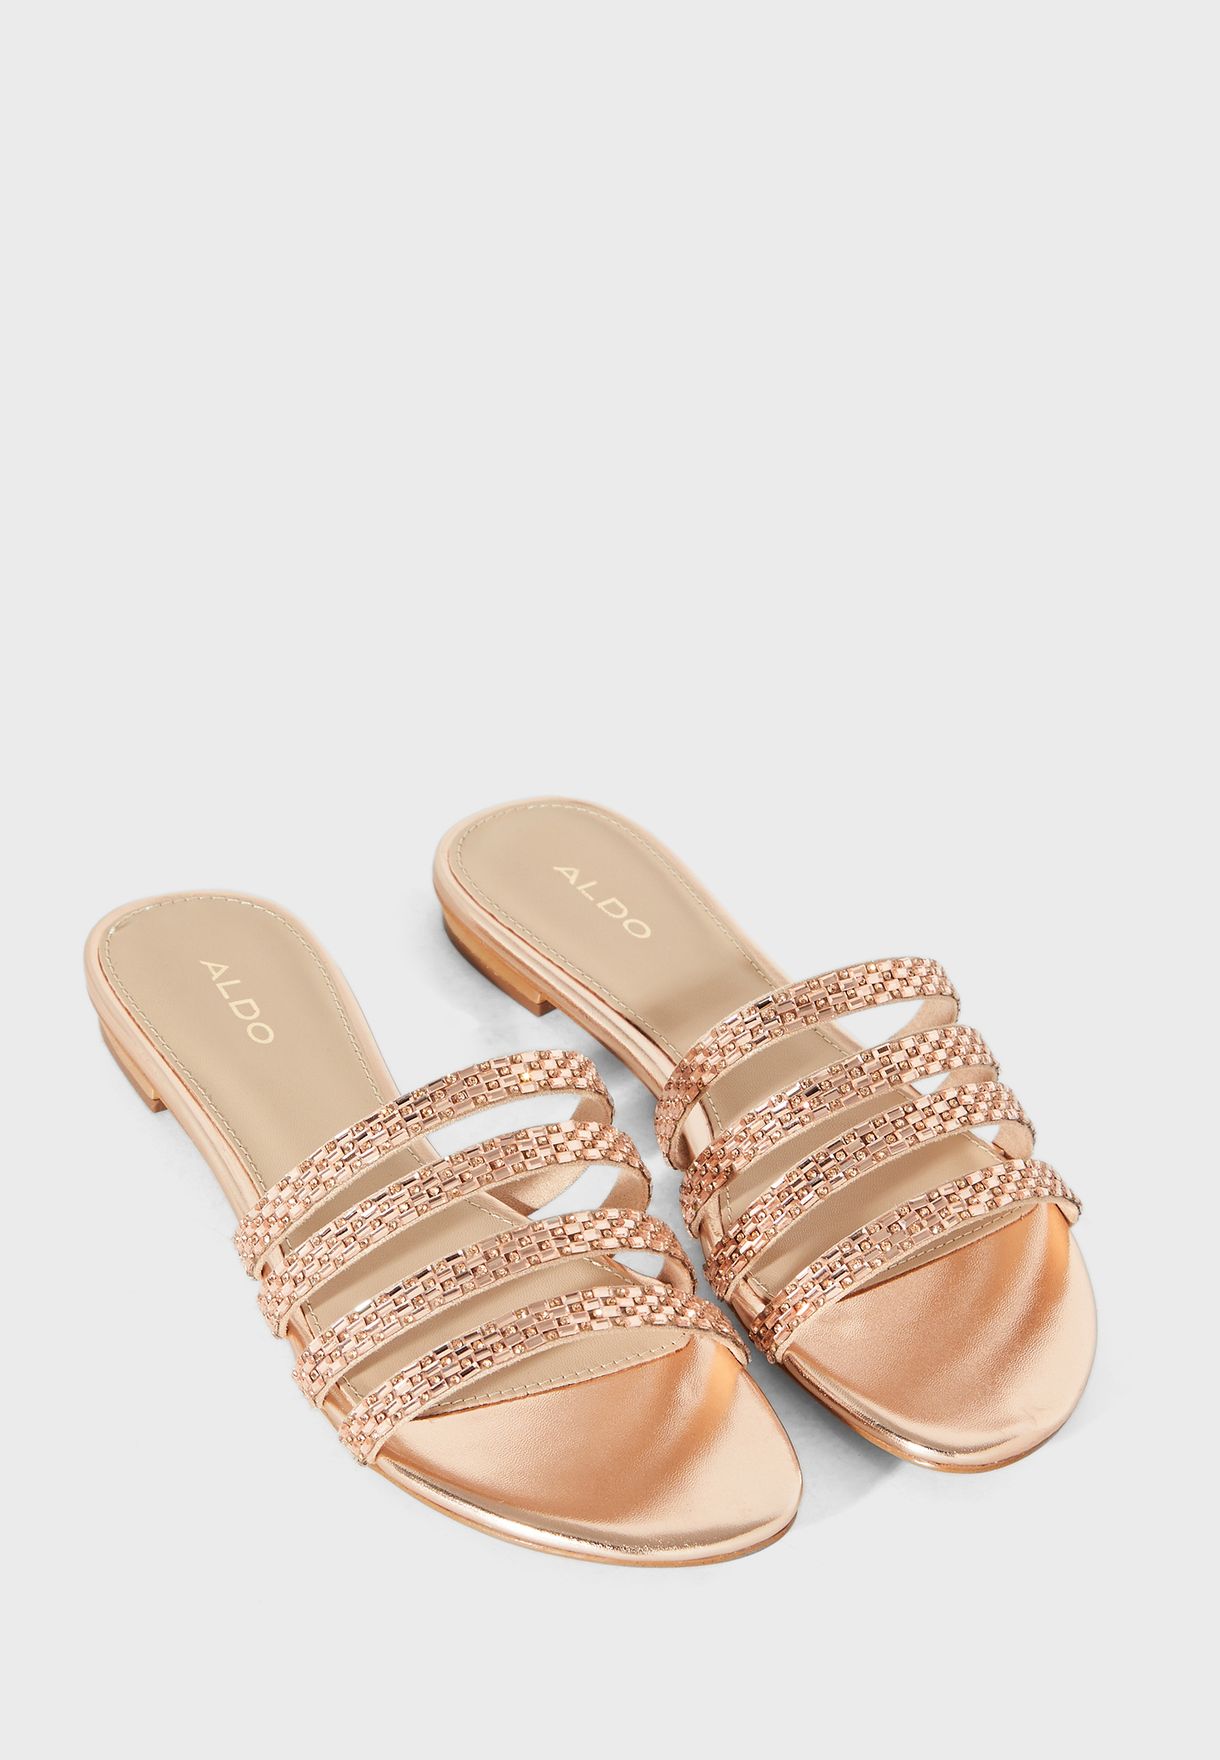 aldo shoes rose gold